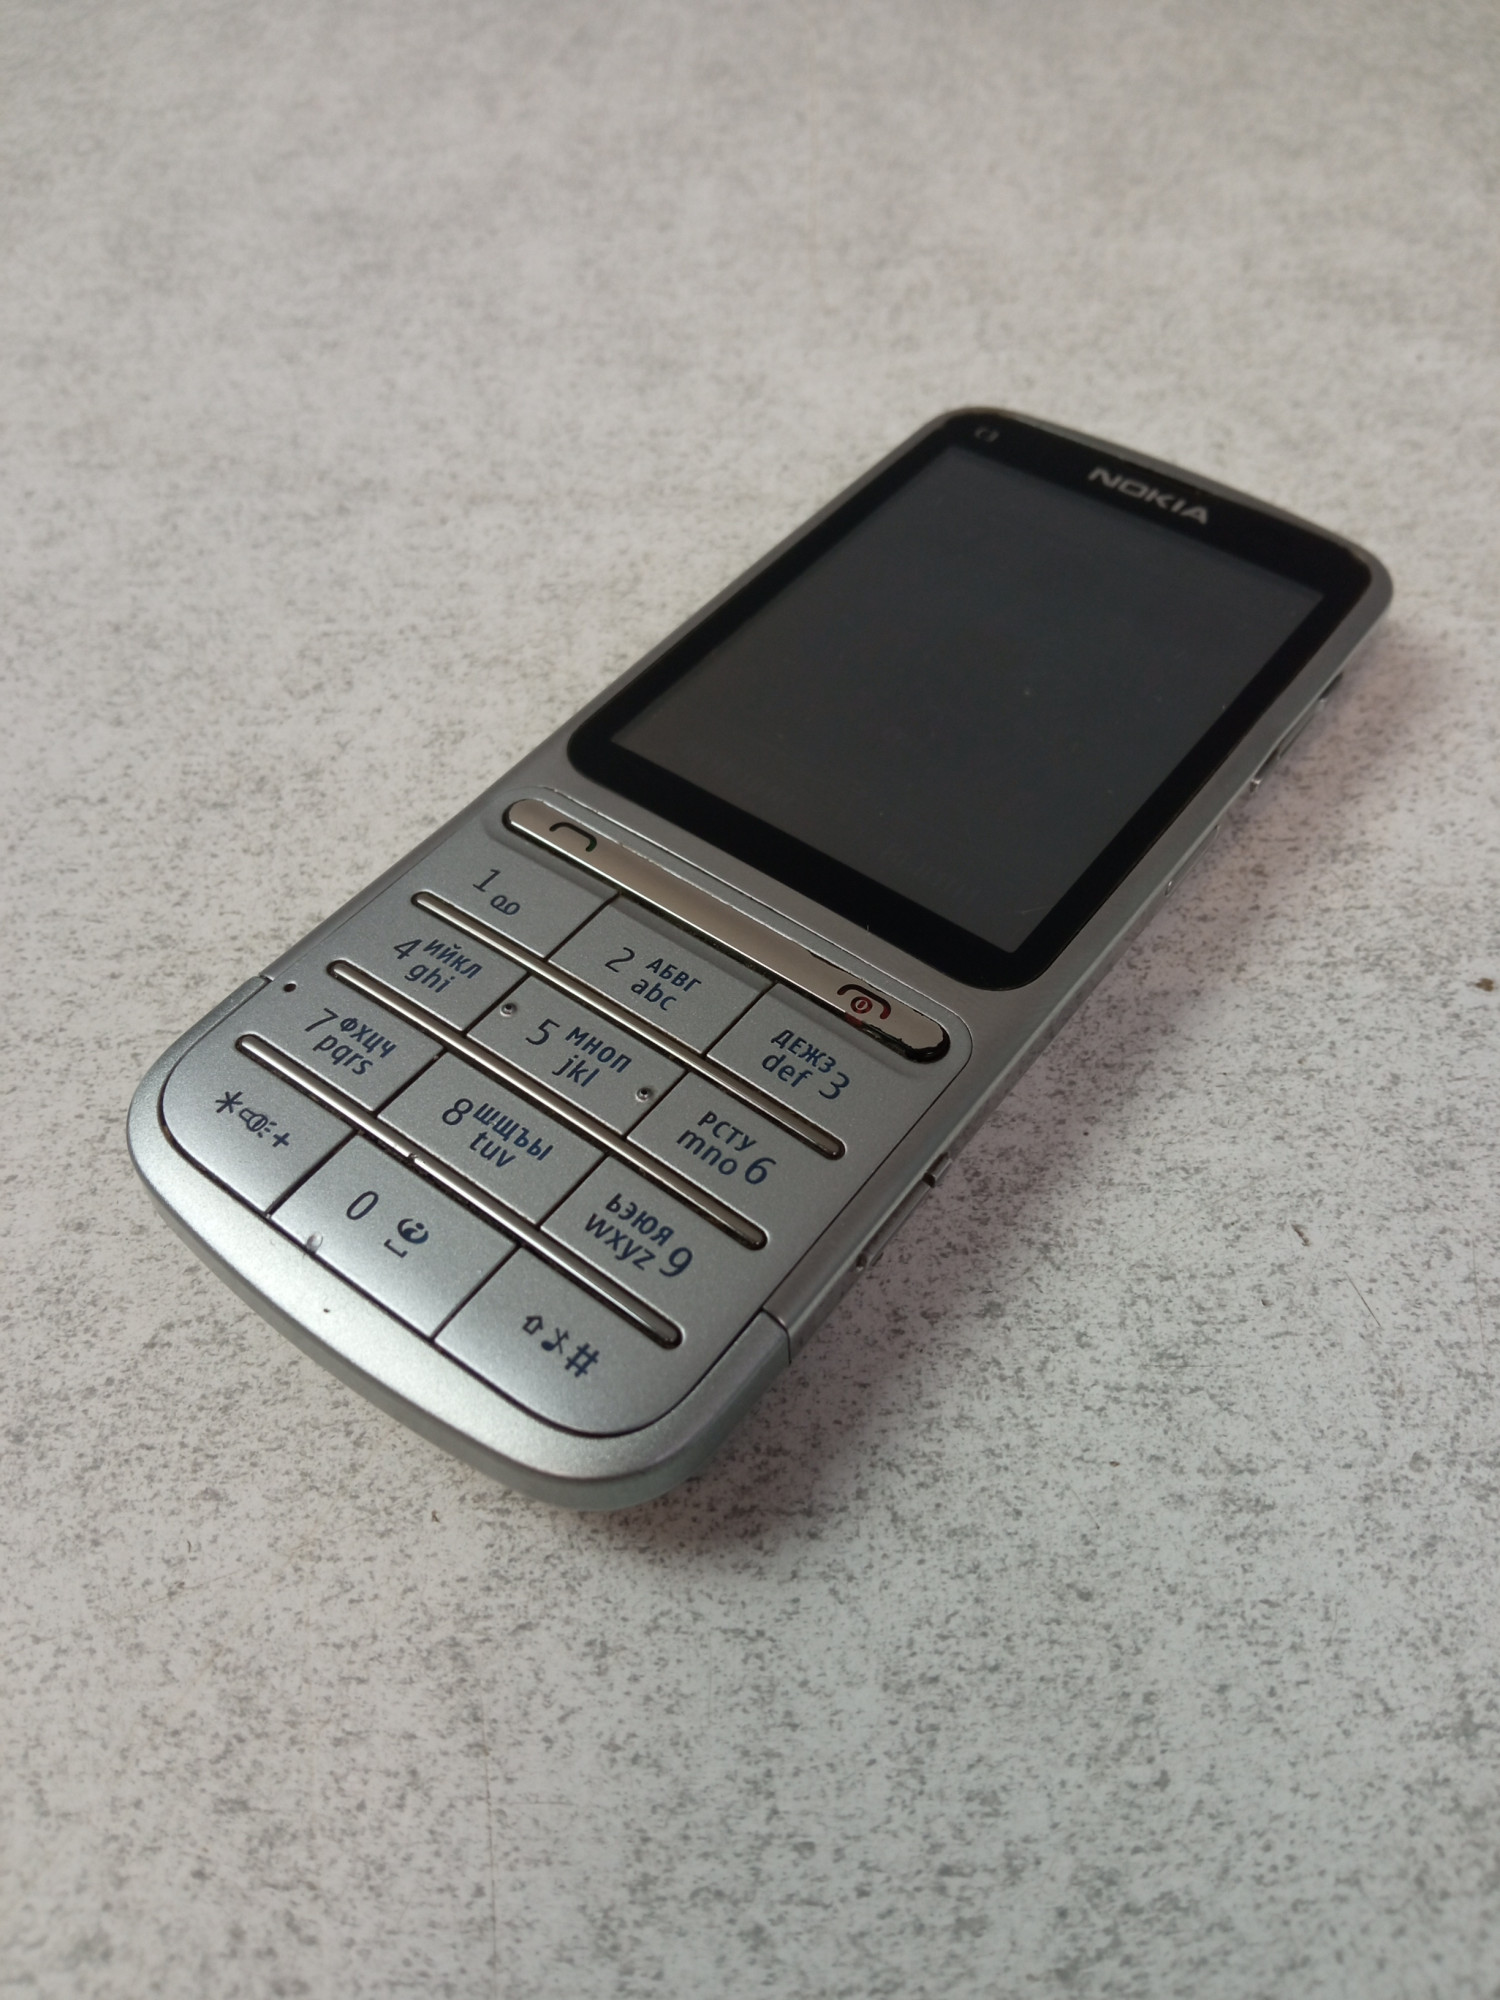 Nokia C3-01 4